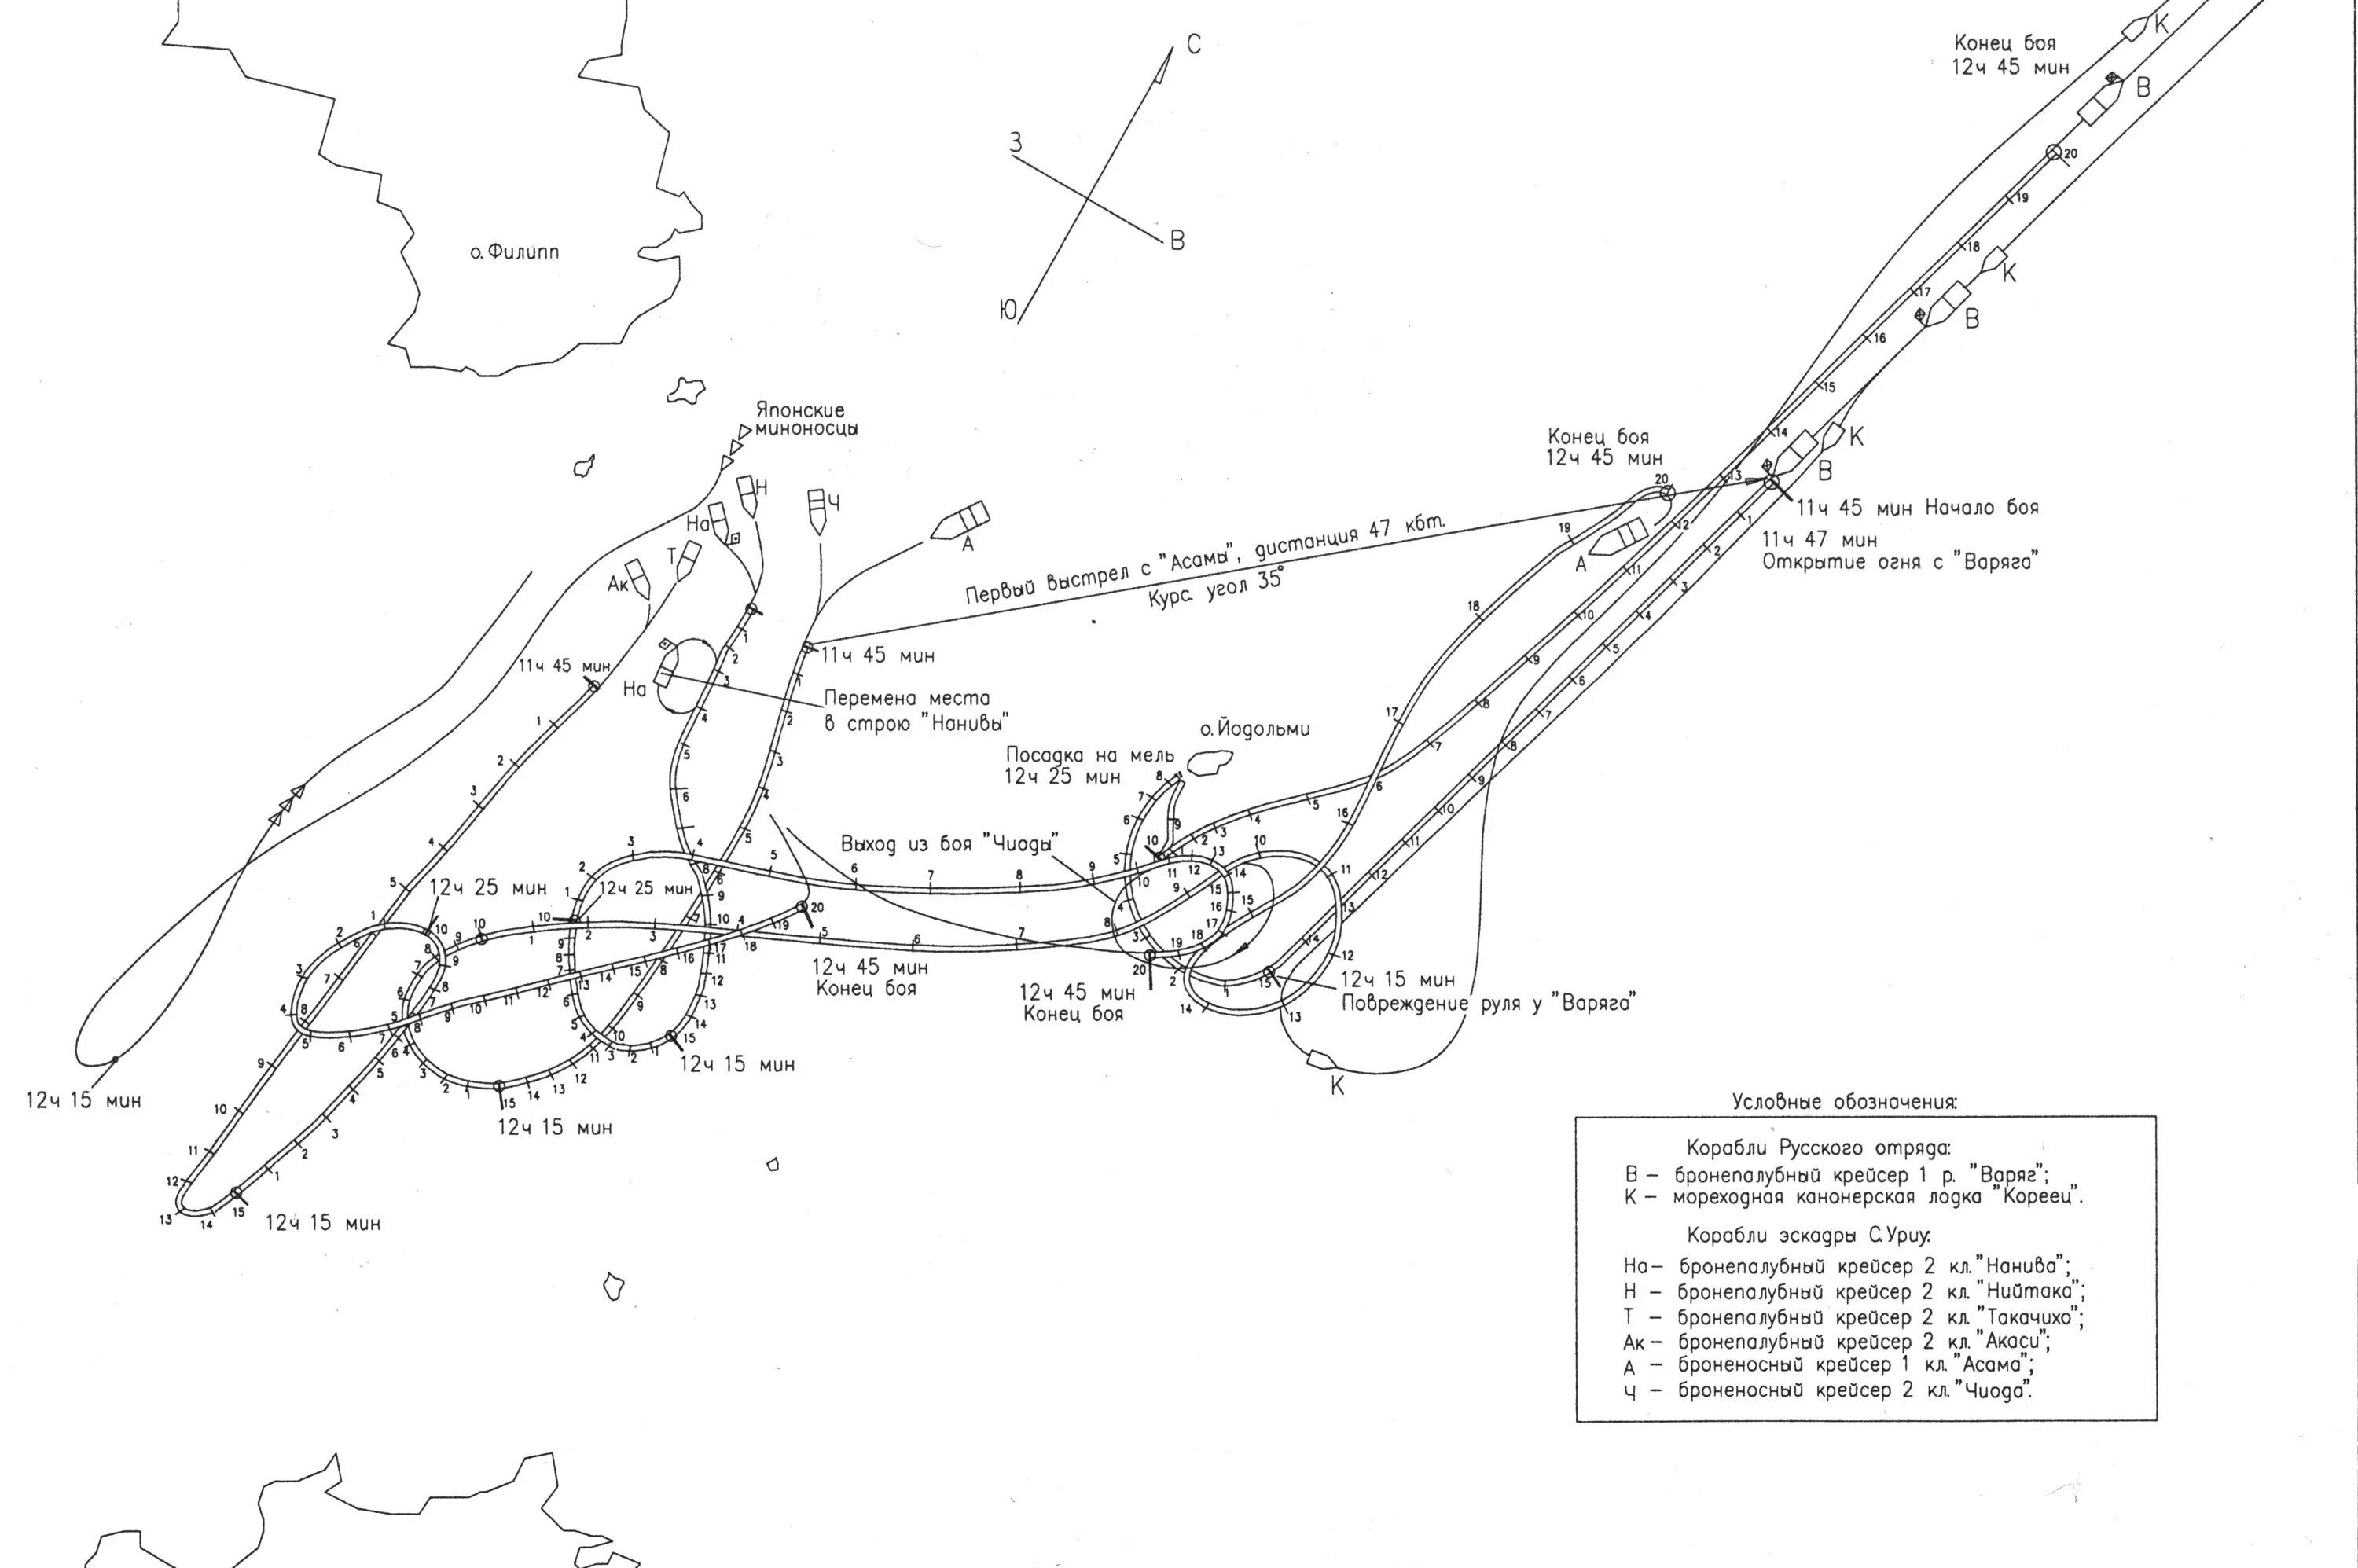 Нападение японцев в чемульпо. Карта сражения крейсера Варяг. Крейсер Варяг Чемульпо. Схема боя крейсера Варяг. Схема боя в Чемульпо.